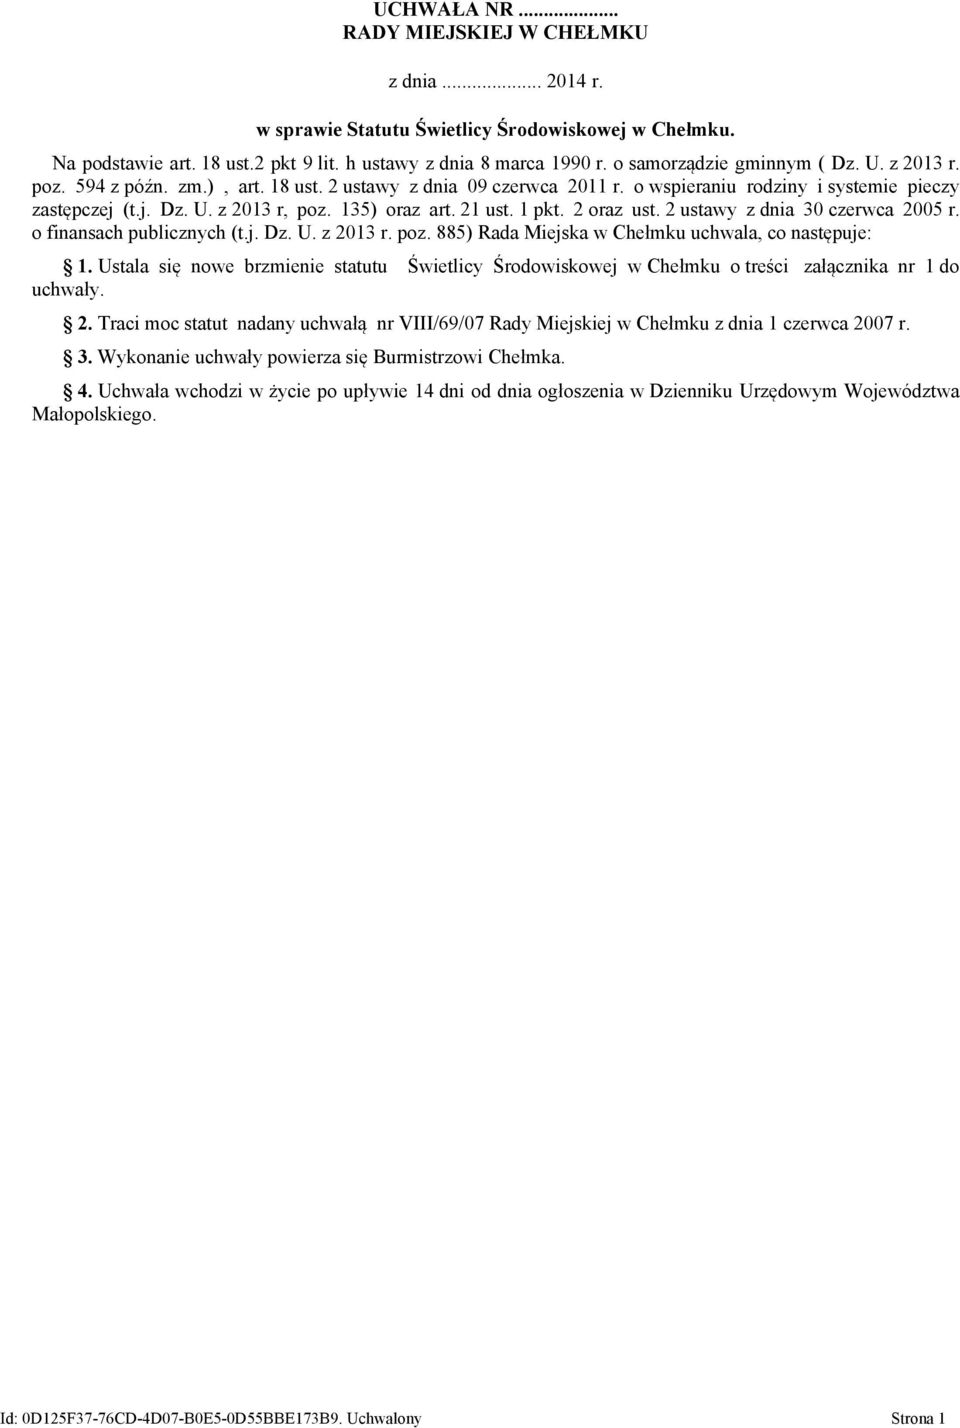 135) oraz art. 21 ust. 1 pkt. 2 oraz ust. 2 ustawy z dnia 30 czerwca 2005 r. o finansach publicznych (t.j. Dz. U. z 2013 r. poz. 885) Rada Miejska w Chełmku uchwala, co następuje: 1.